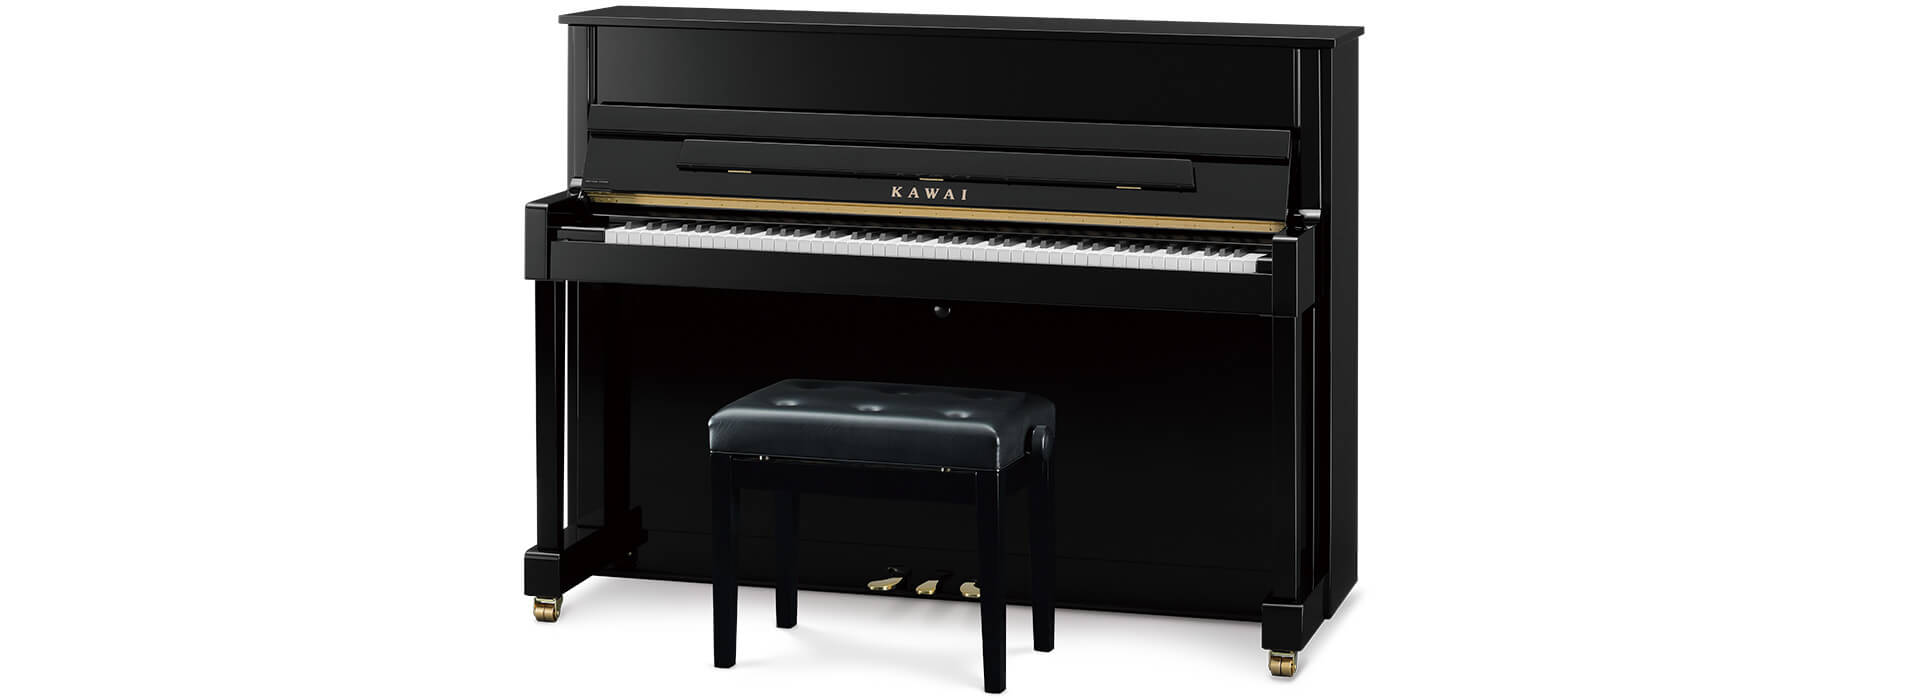 カワイ×島村楽器コラボレーションモデル 第4弾 「ピアノは黒艶出しが良い」という方のための高さ113cmのコンパクトでシンプルなデザインのピアノです。K-114SXシリーズ独自の華麗でモダンな外装仕上げと、本格的な演奏を同時にお楽しみいただけます。ウルトラ・レスポンシブ・アクションⅡからくる鍵盤の反 […]